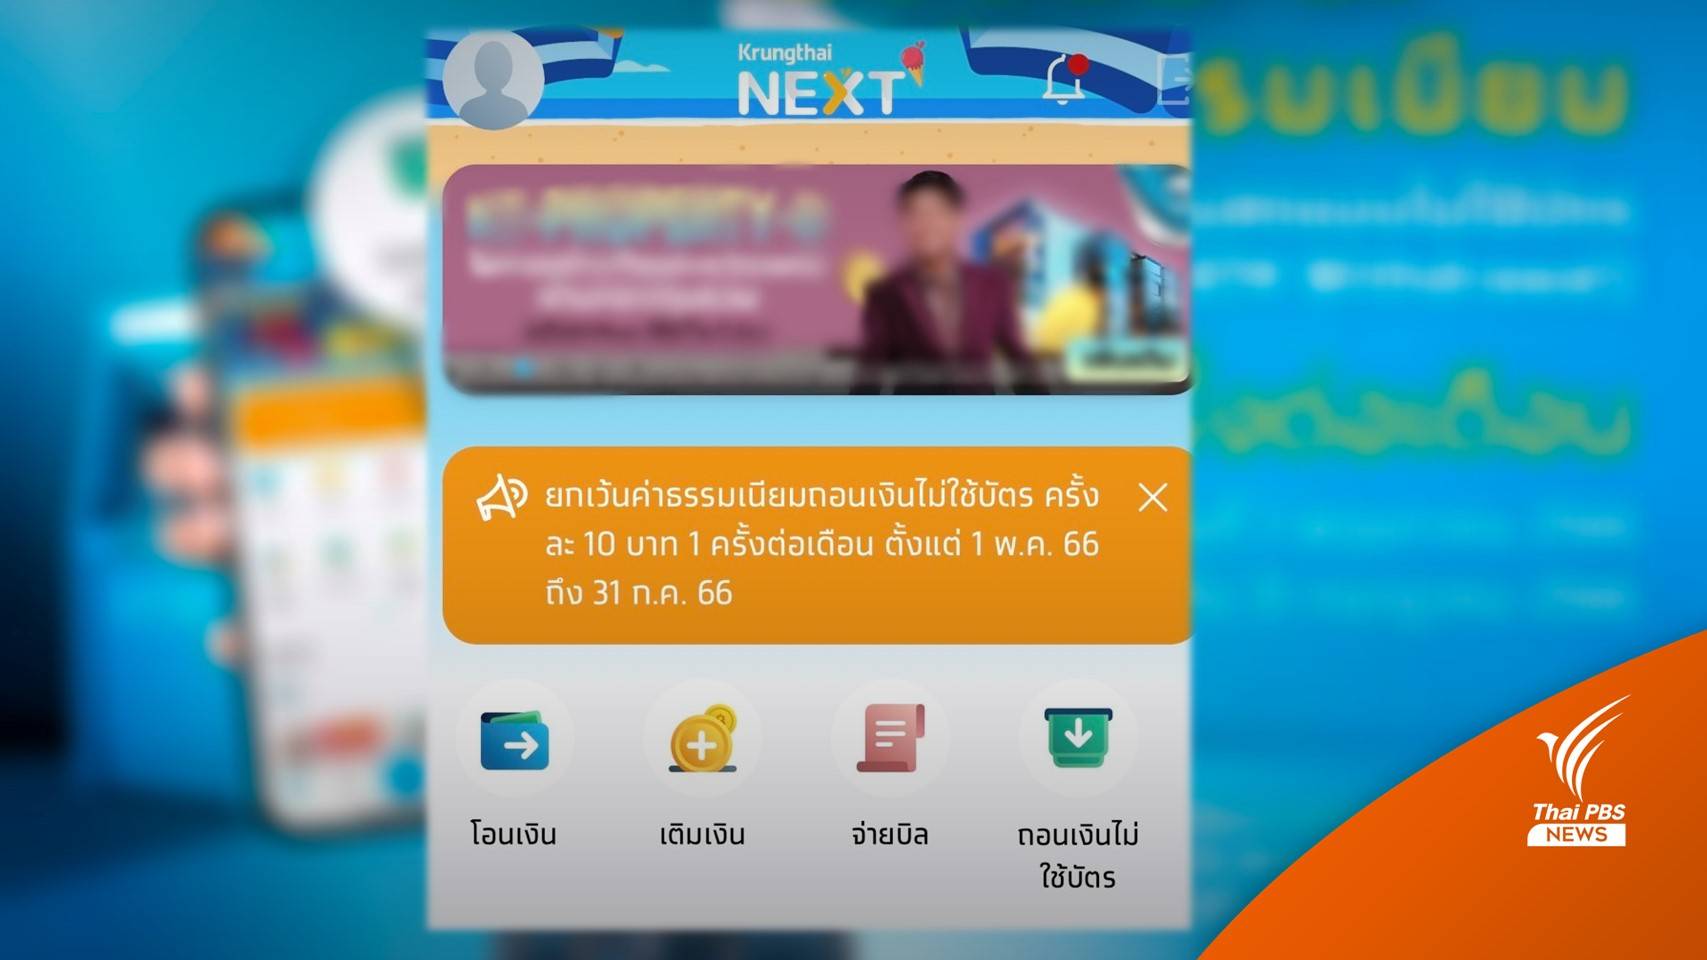 เริ่ม 1 พ.ค. ธ.กรุงไทย เก็บค่าธรรมเนียมถอนเงินไม่ใช้บัตรครั้งละ 10 บาท |  Thai Pbs News ข่าวไทยพีบีเอส